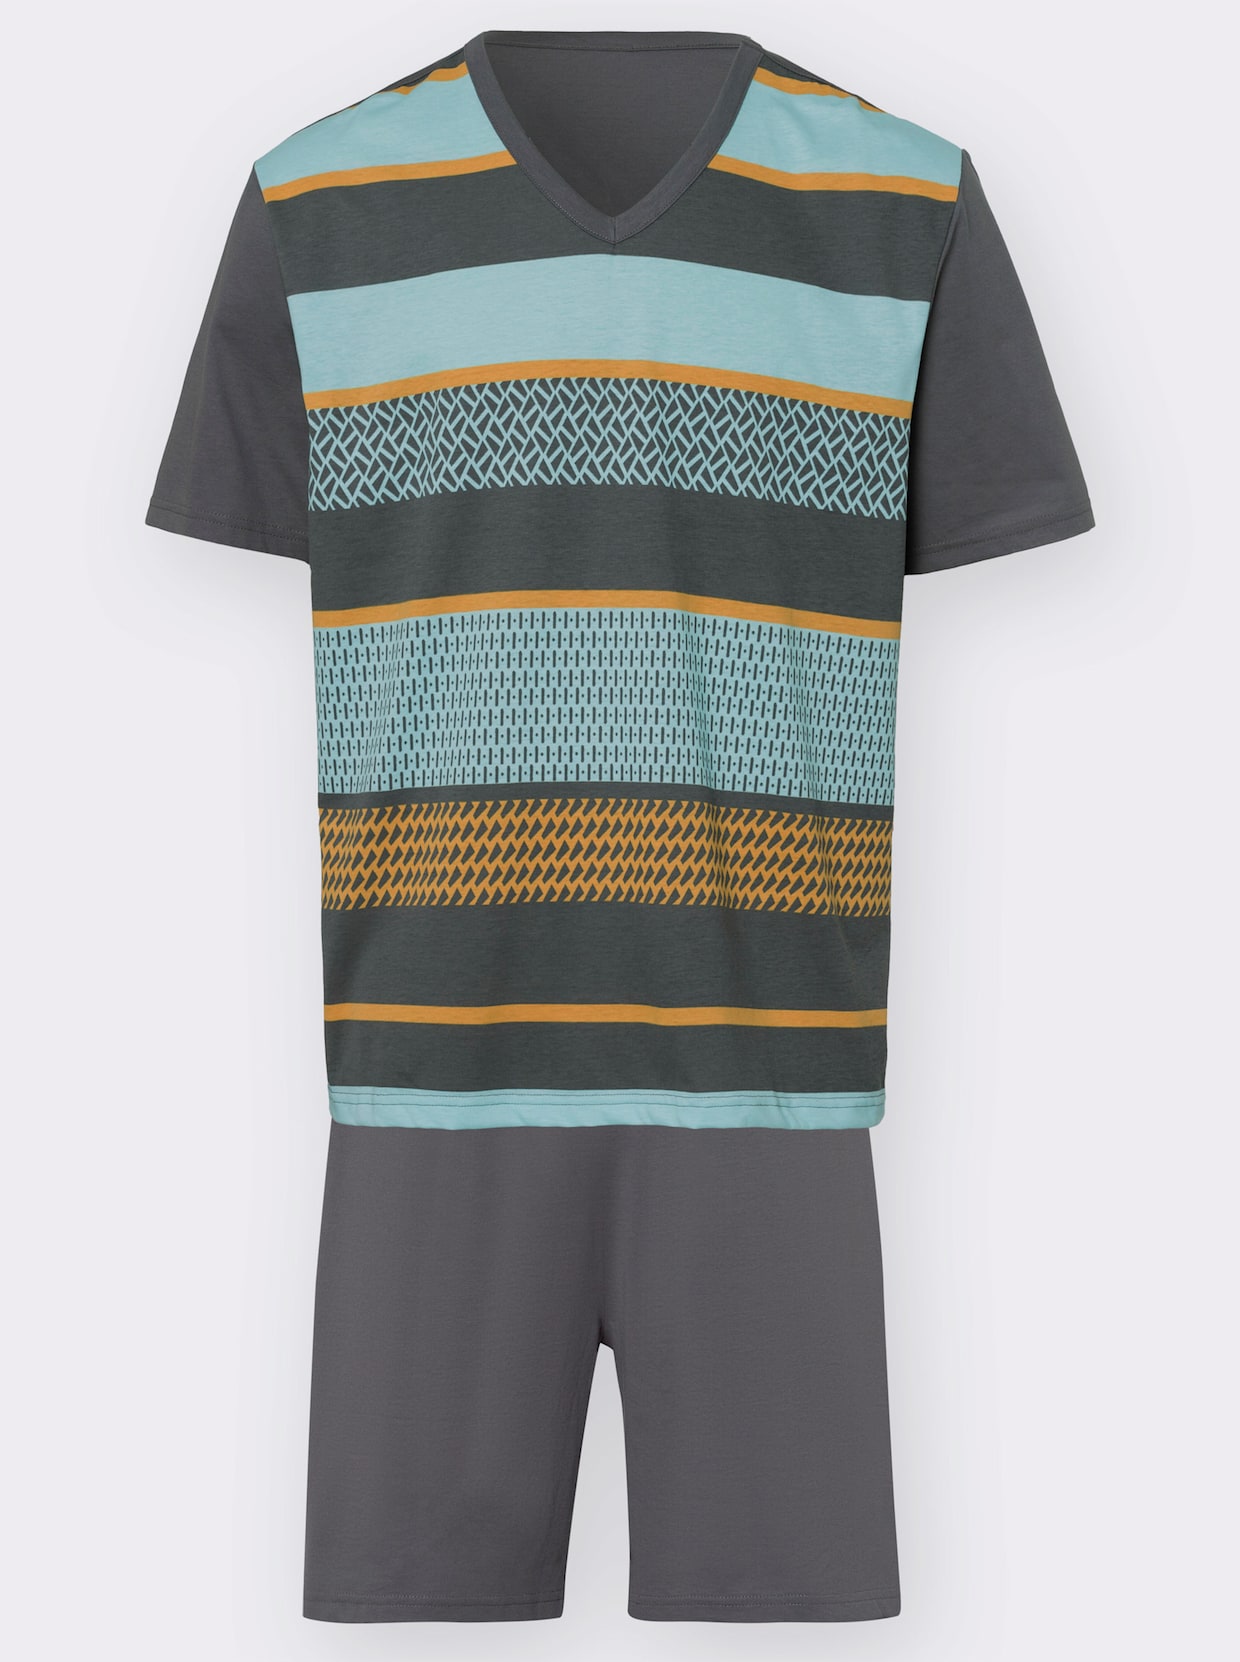 Krátké pyžamo - antracitová-akvamarínová-okrová